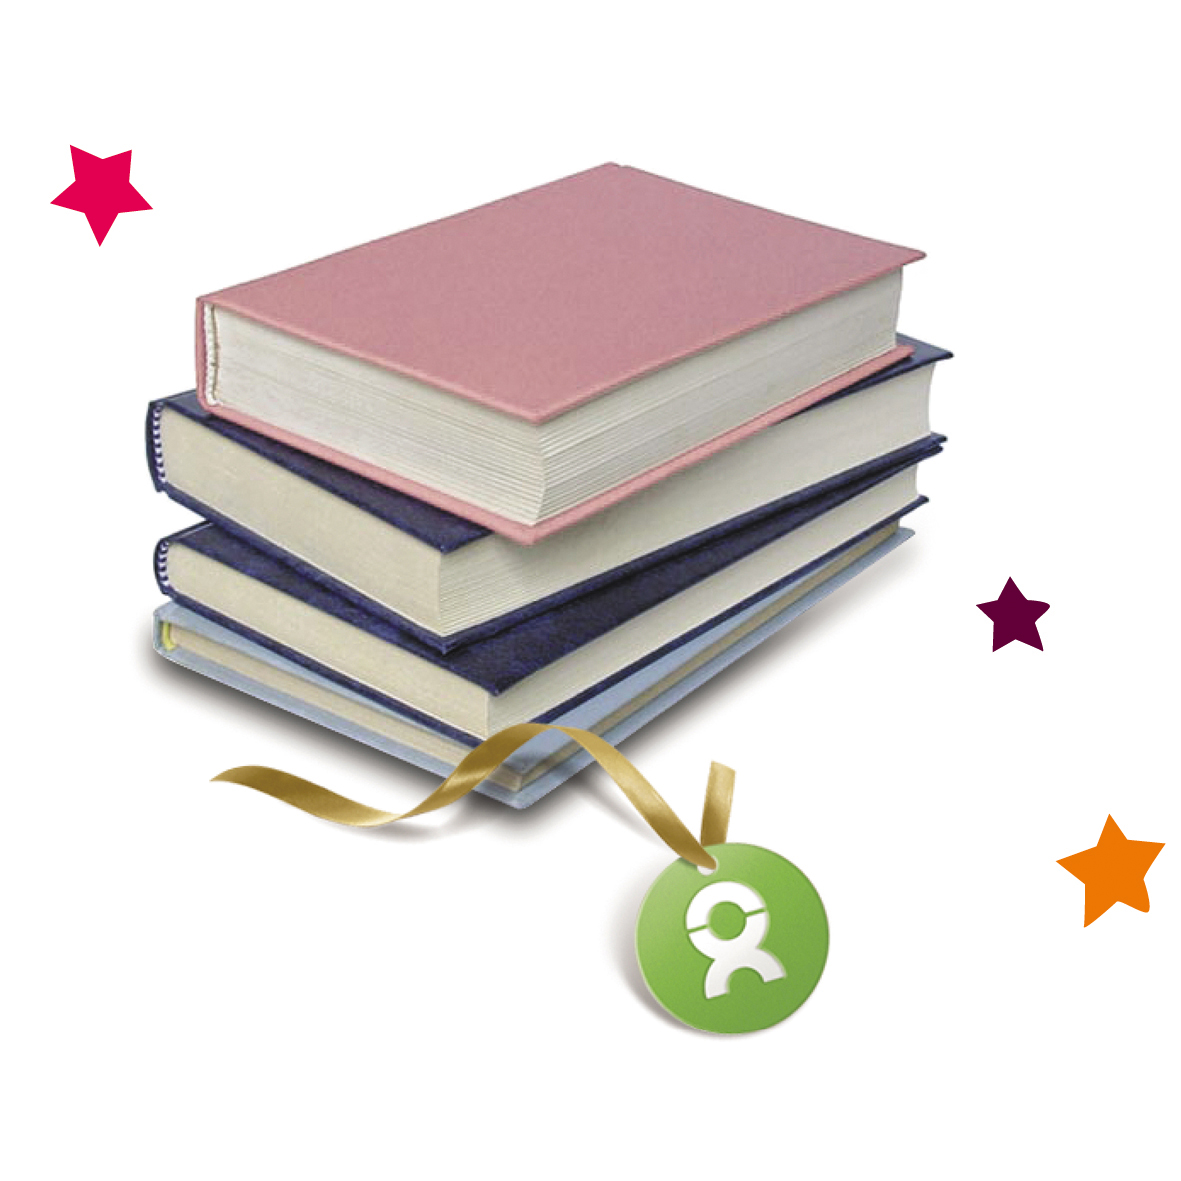 Beispiel Geschenk Spende Schulbücher: Grafik von einem Stapel Schulbücher umgeben von bunten Sternen 